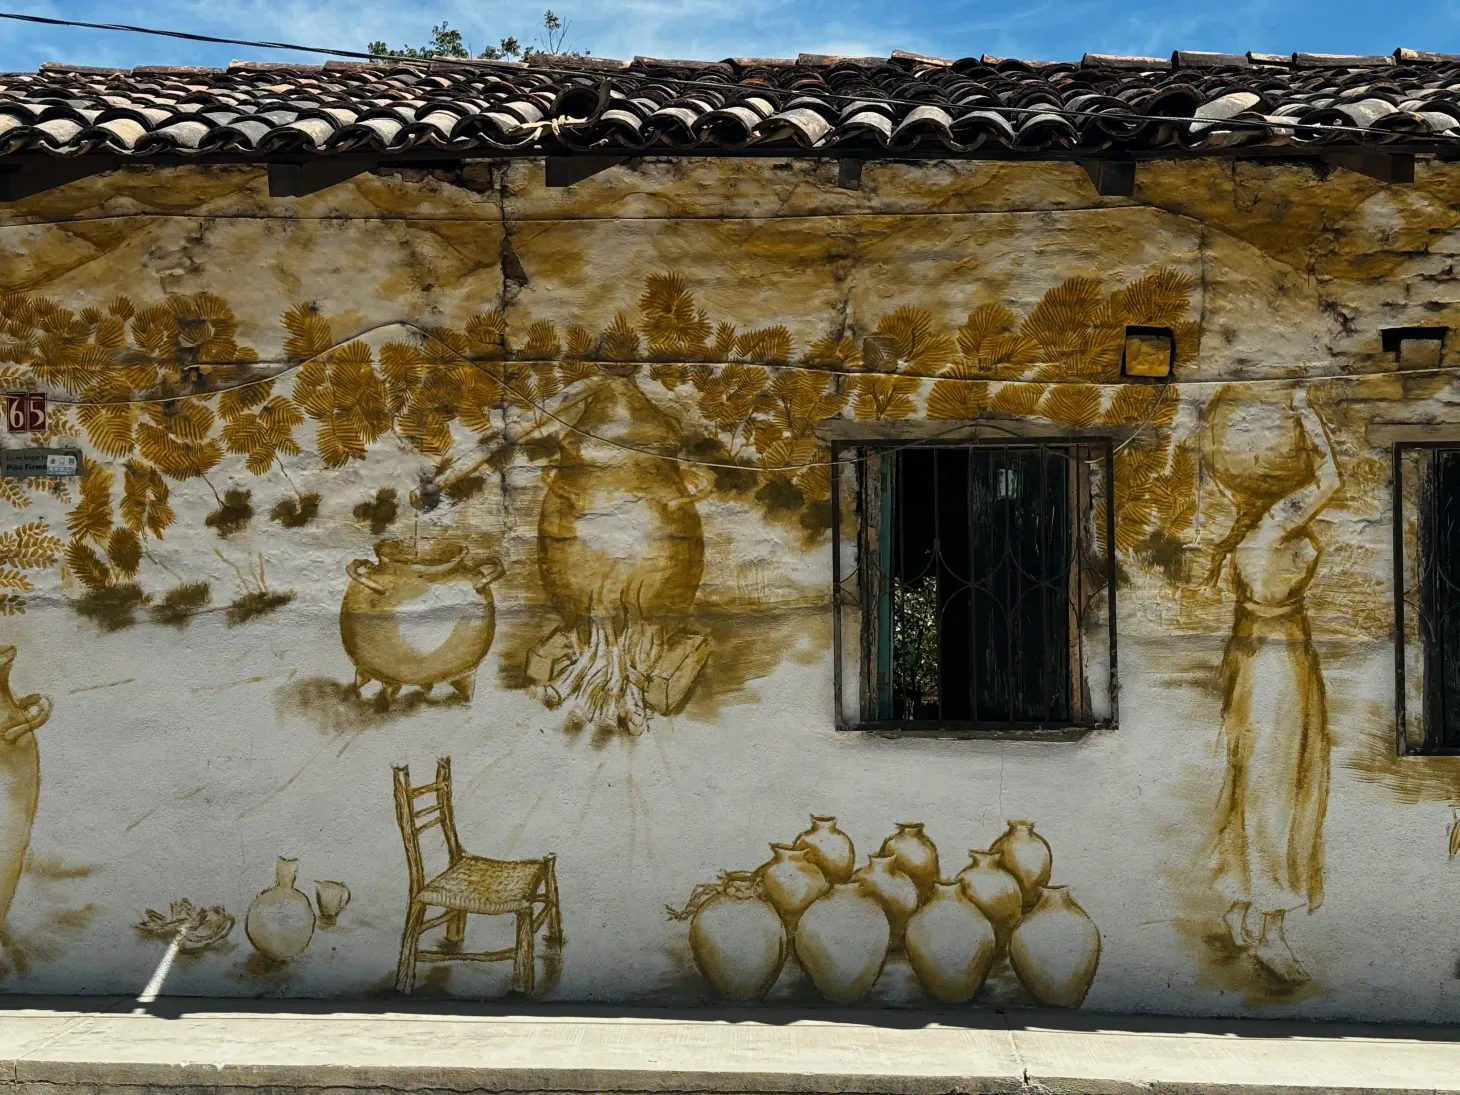 A raicilla mural in El Tuito, Jalisco